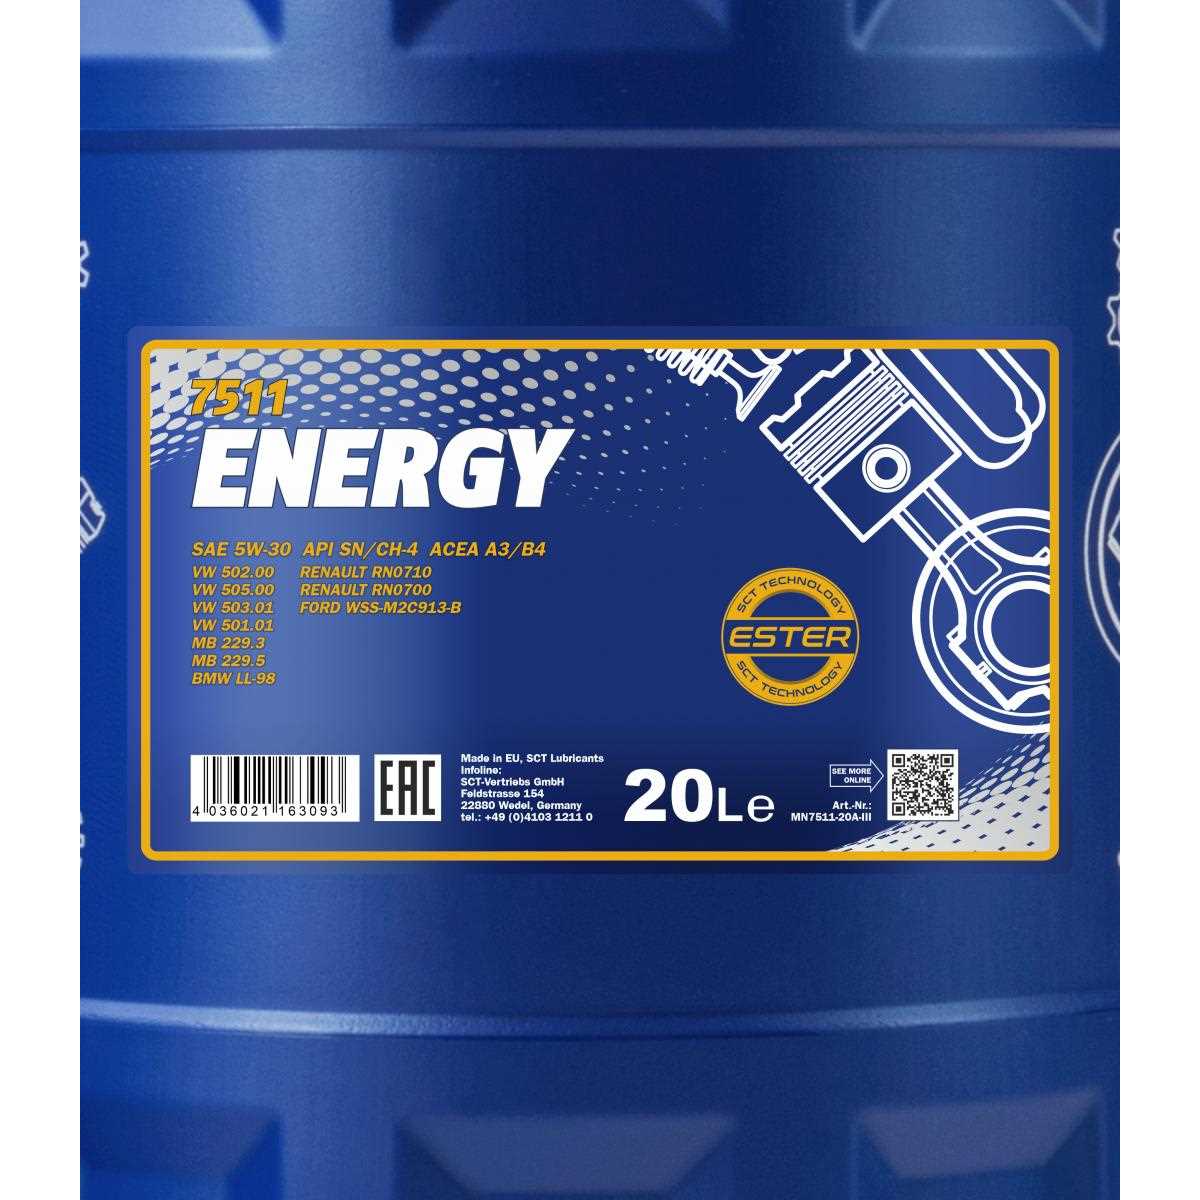 20 Liter MANNOL Motoröl Energy 7511 5W-30 API SN/CH-4 ACEA A3/B4 Engine Oil Öl